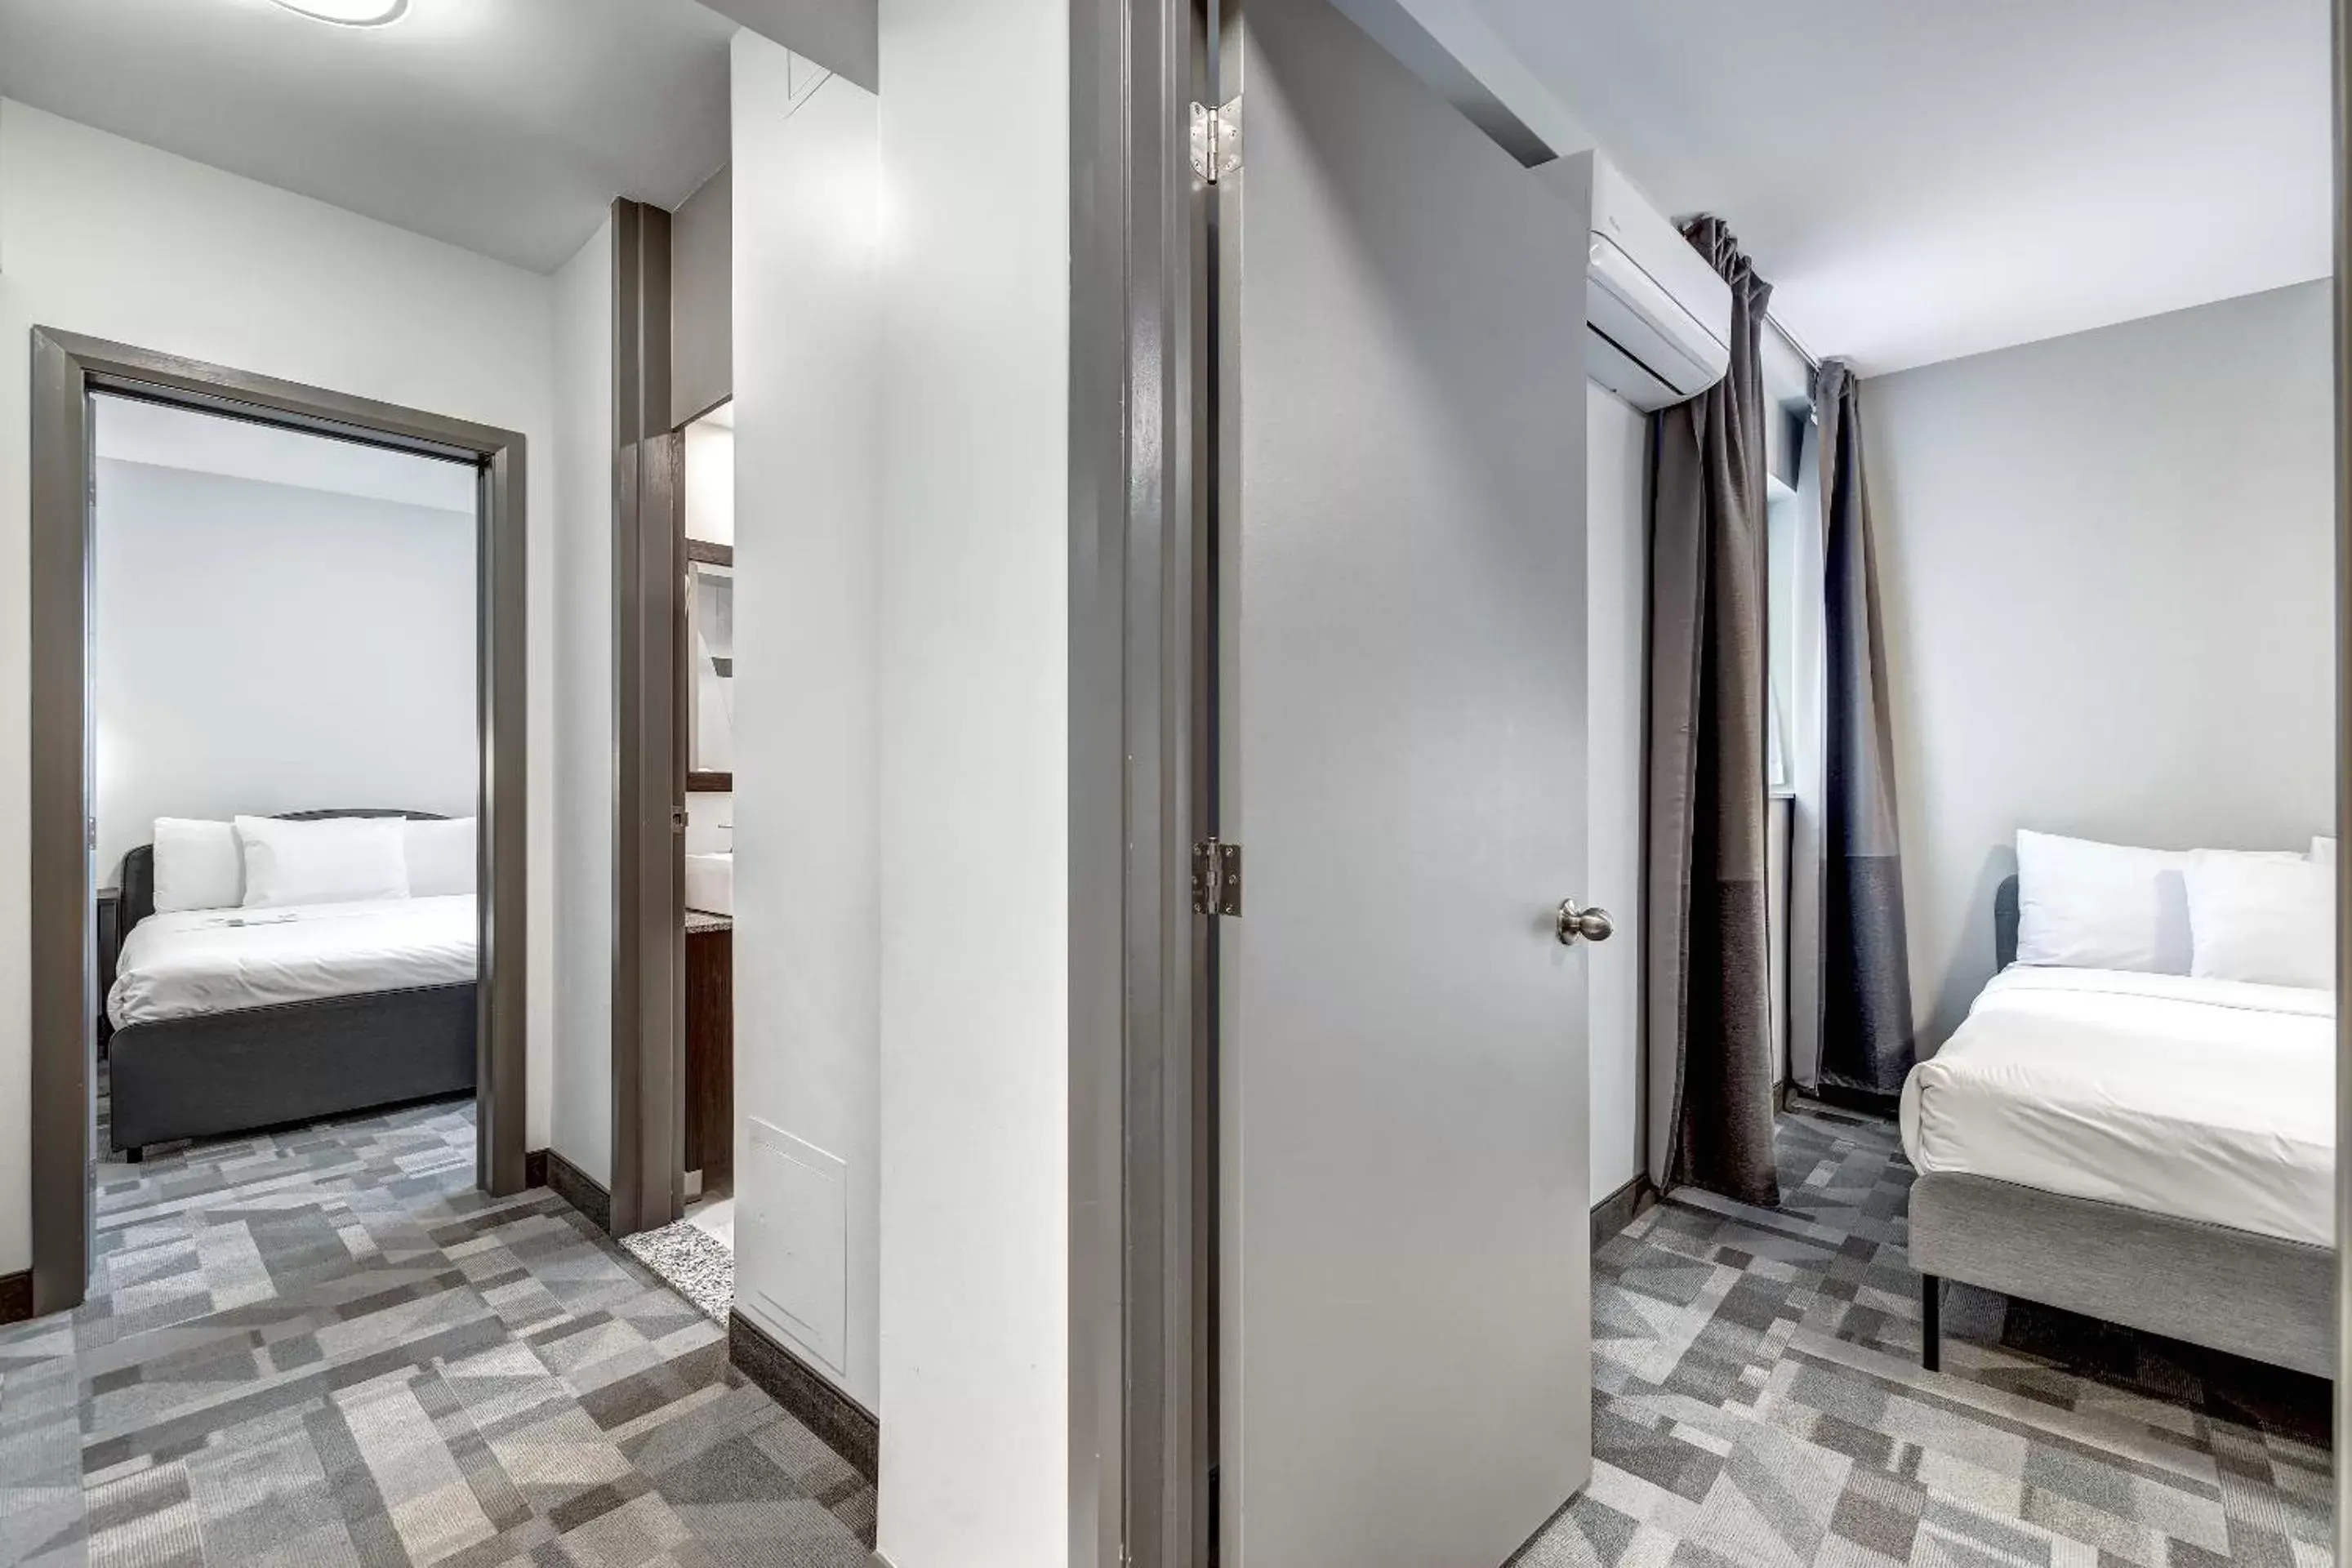 Bedroom, Bathroom in Terrasse Royale Hotel